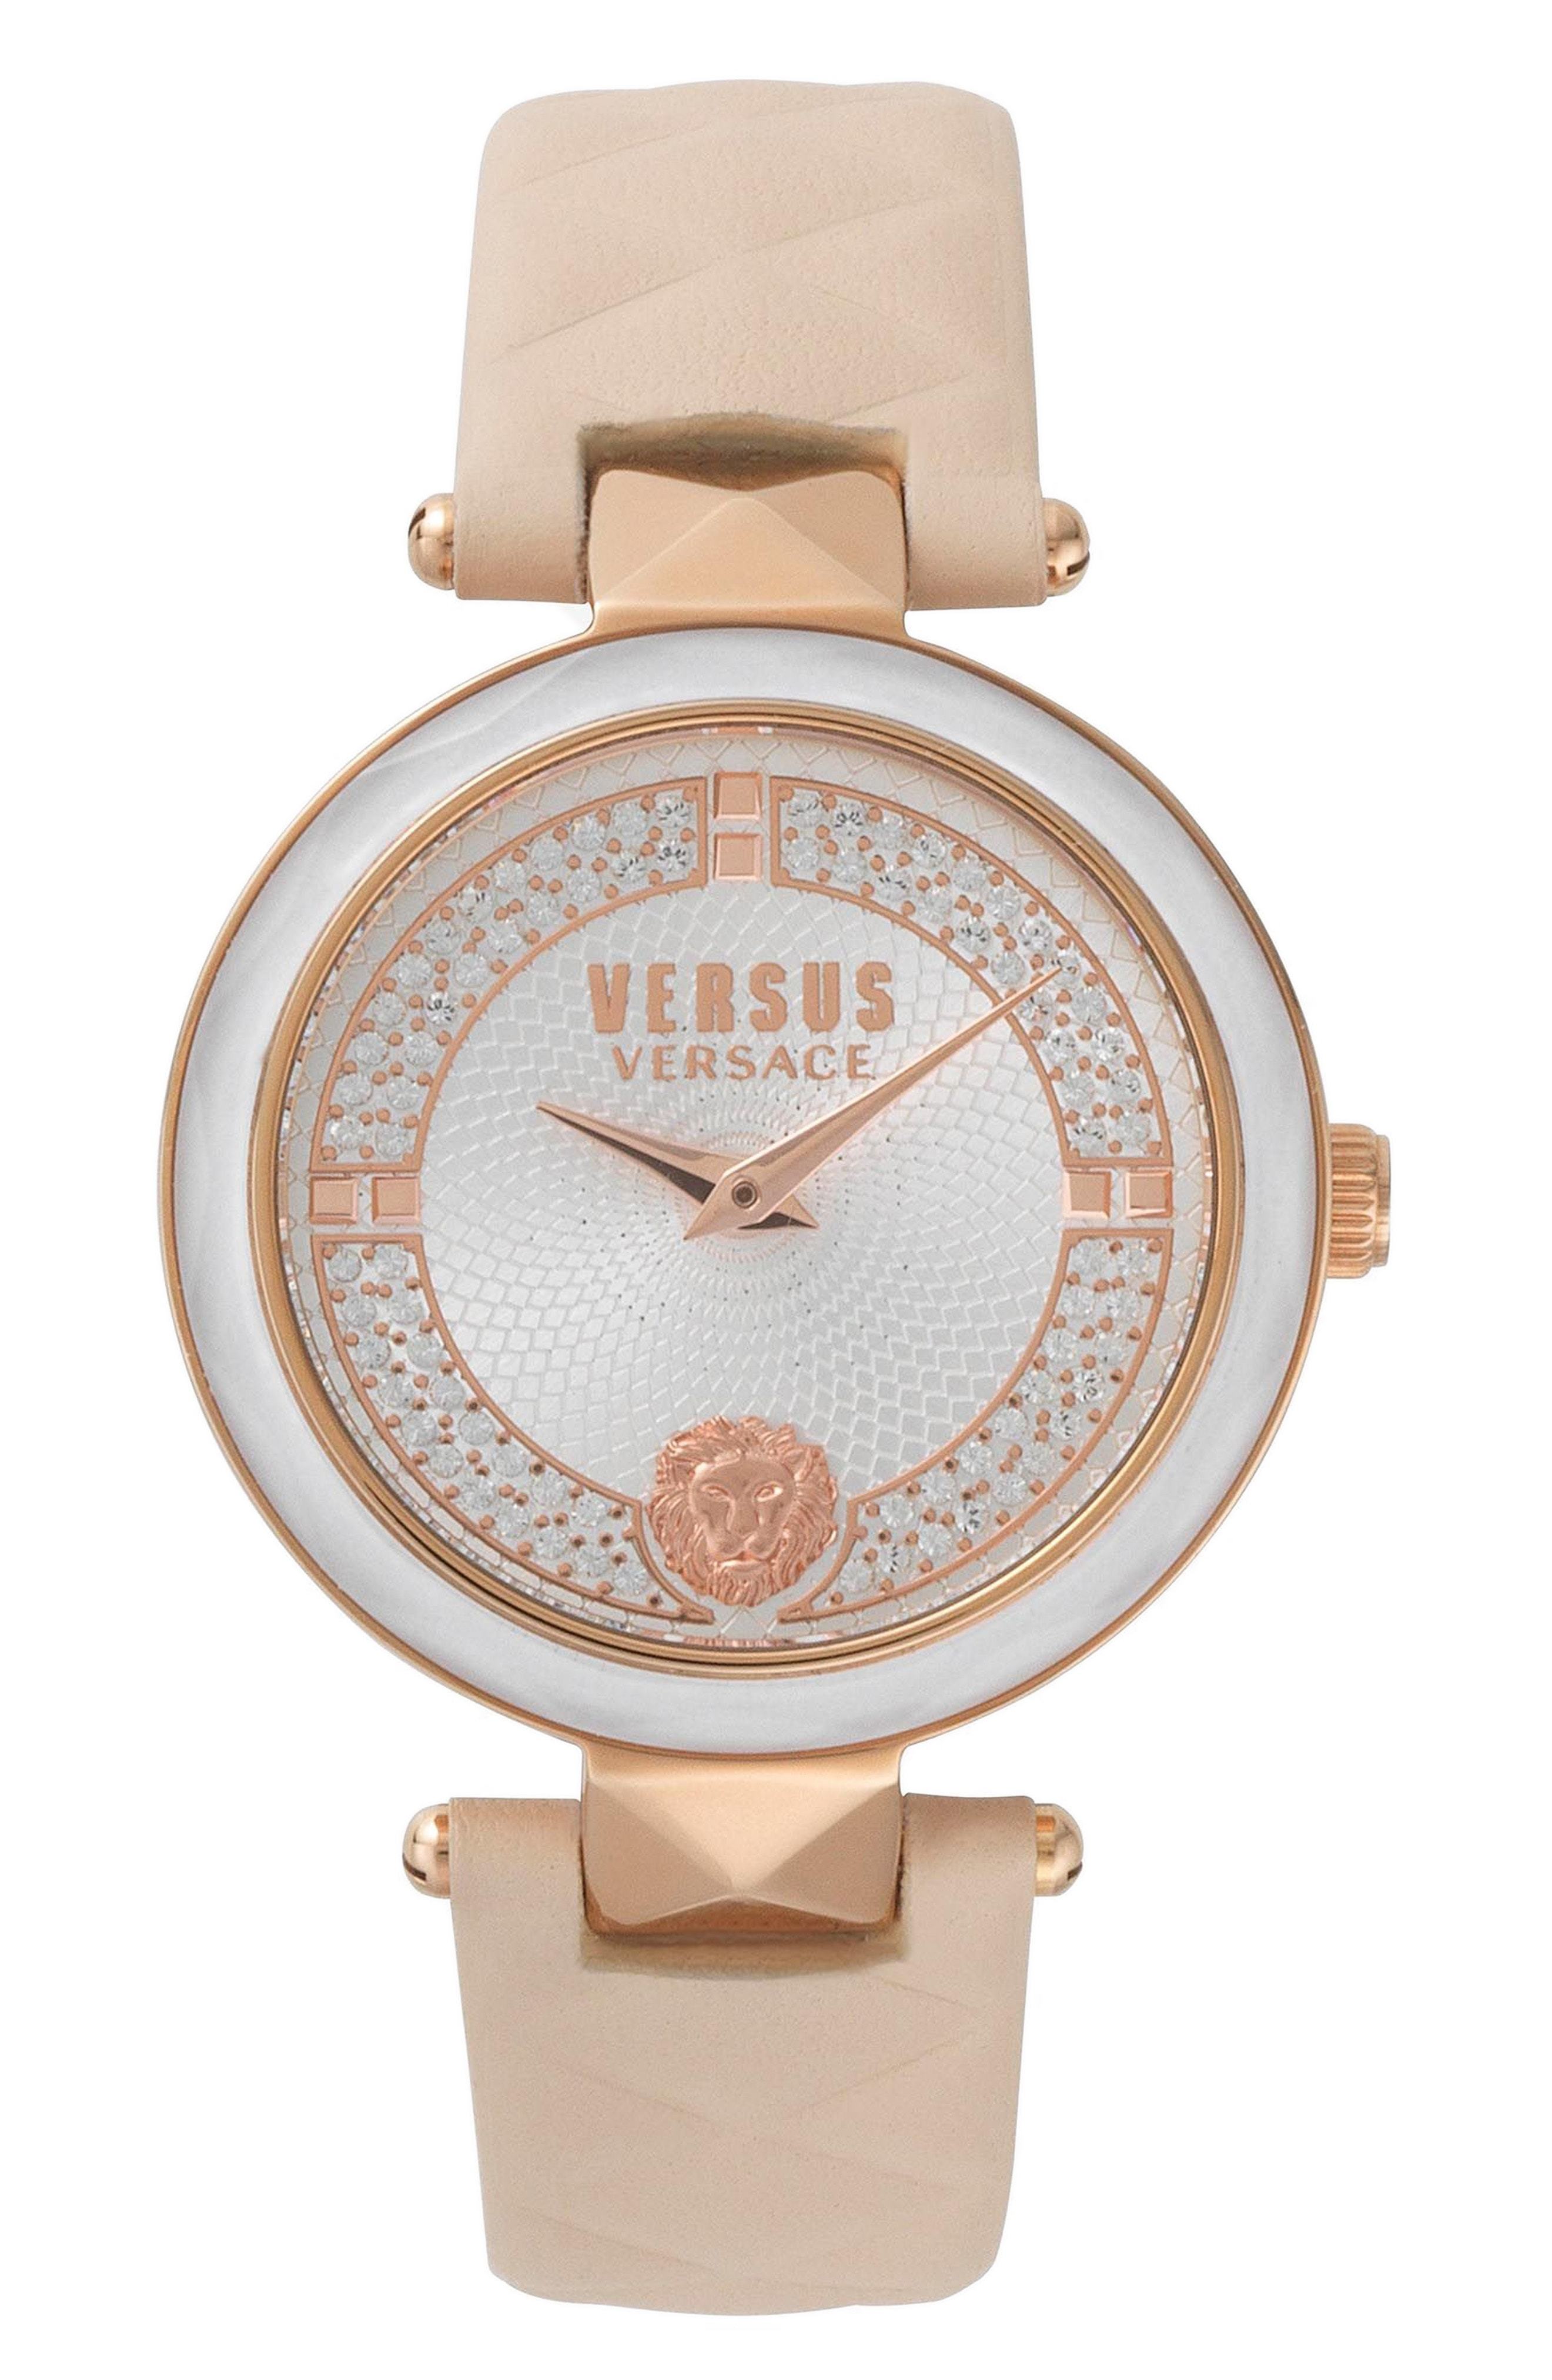 Monopoly Centraliseren Elektropositief Versus Versace Covent Garden Leather Watch, $270 | Nordstrom | Lookastic